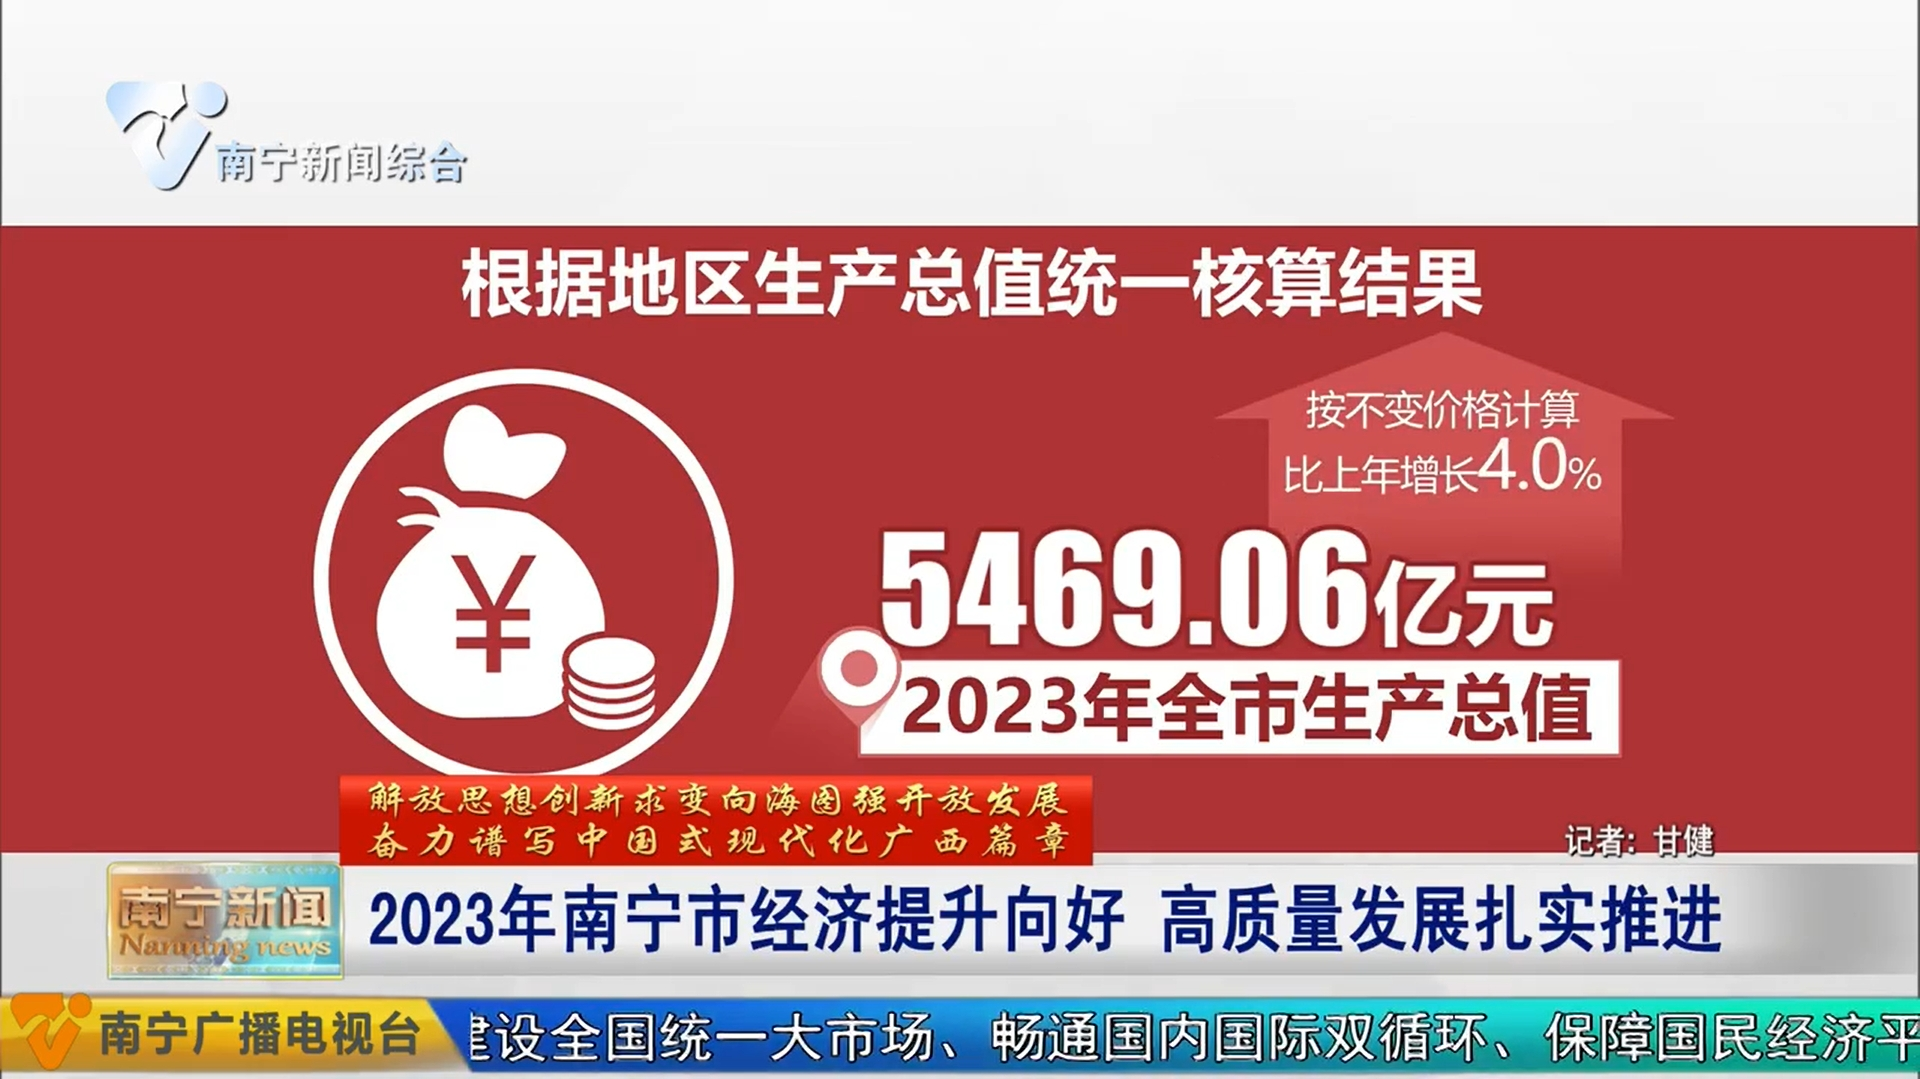 2023年南宁市经济提升向好 高质量发展扎实推进